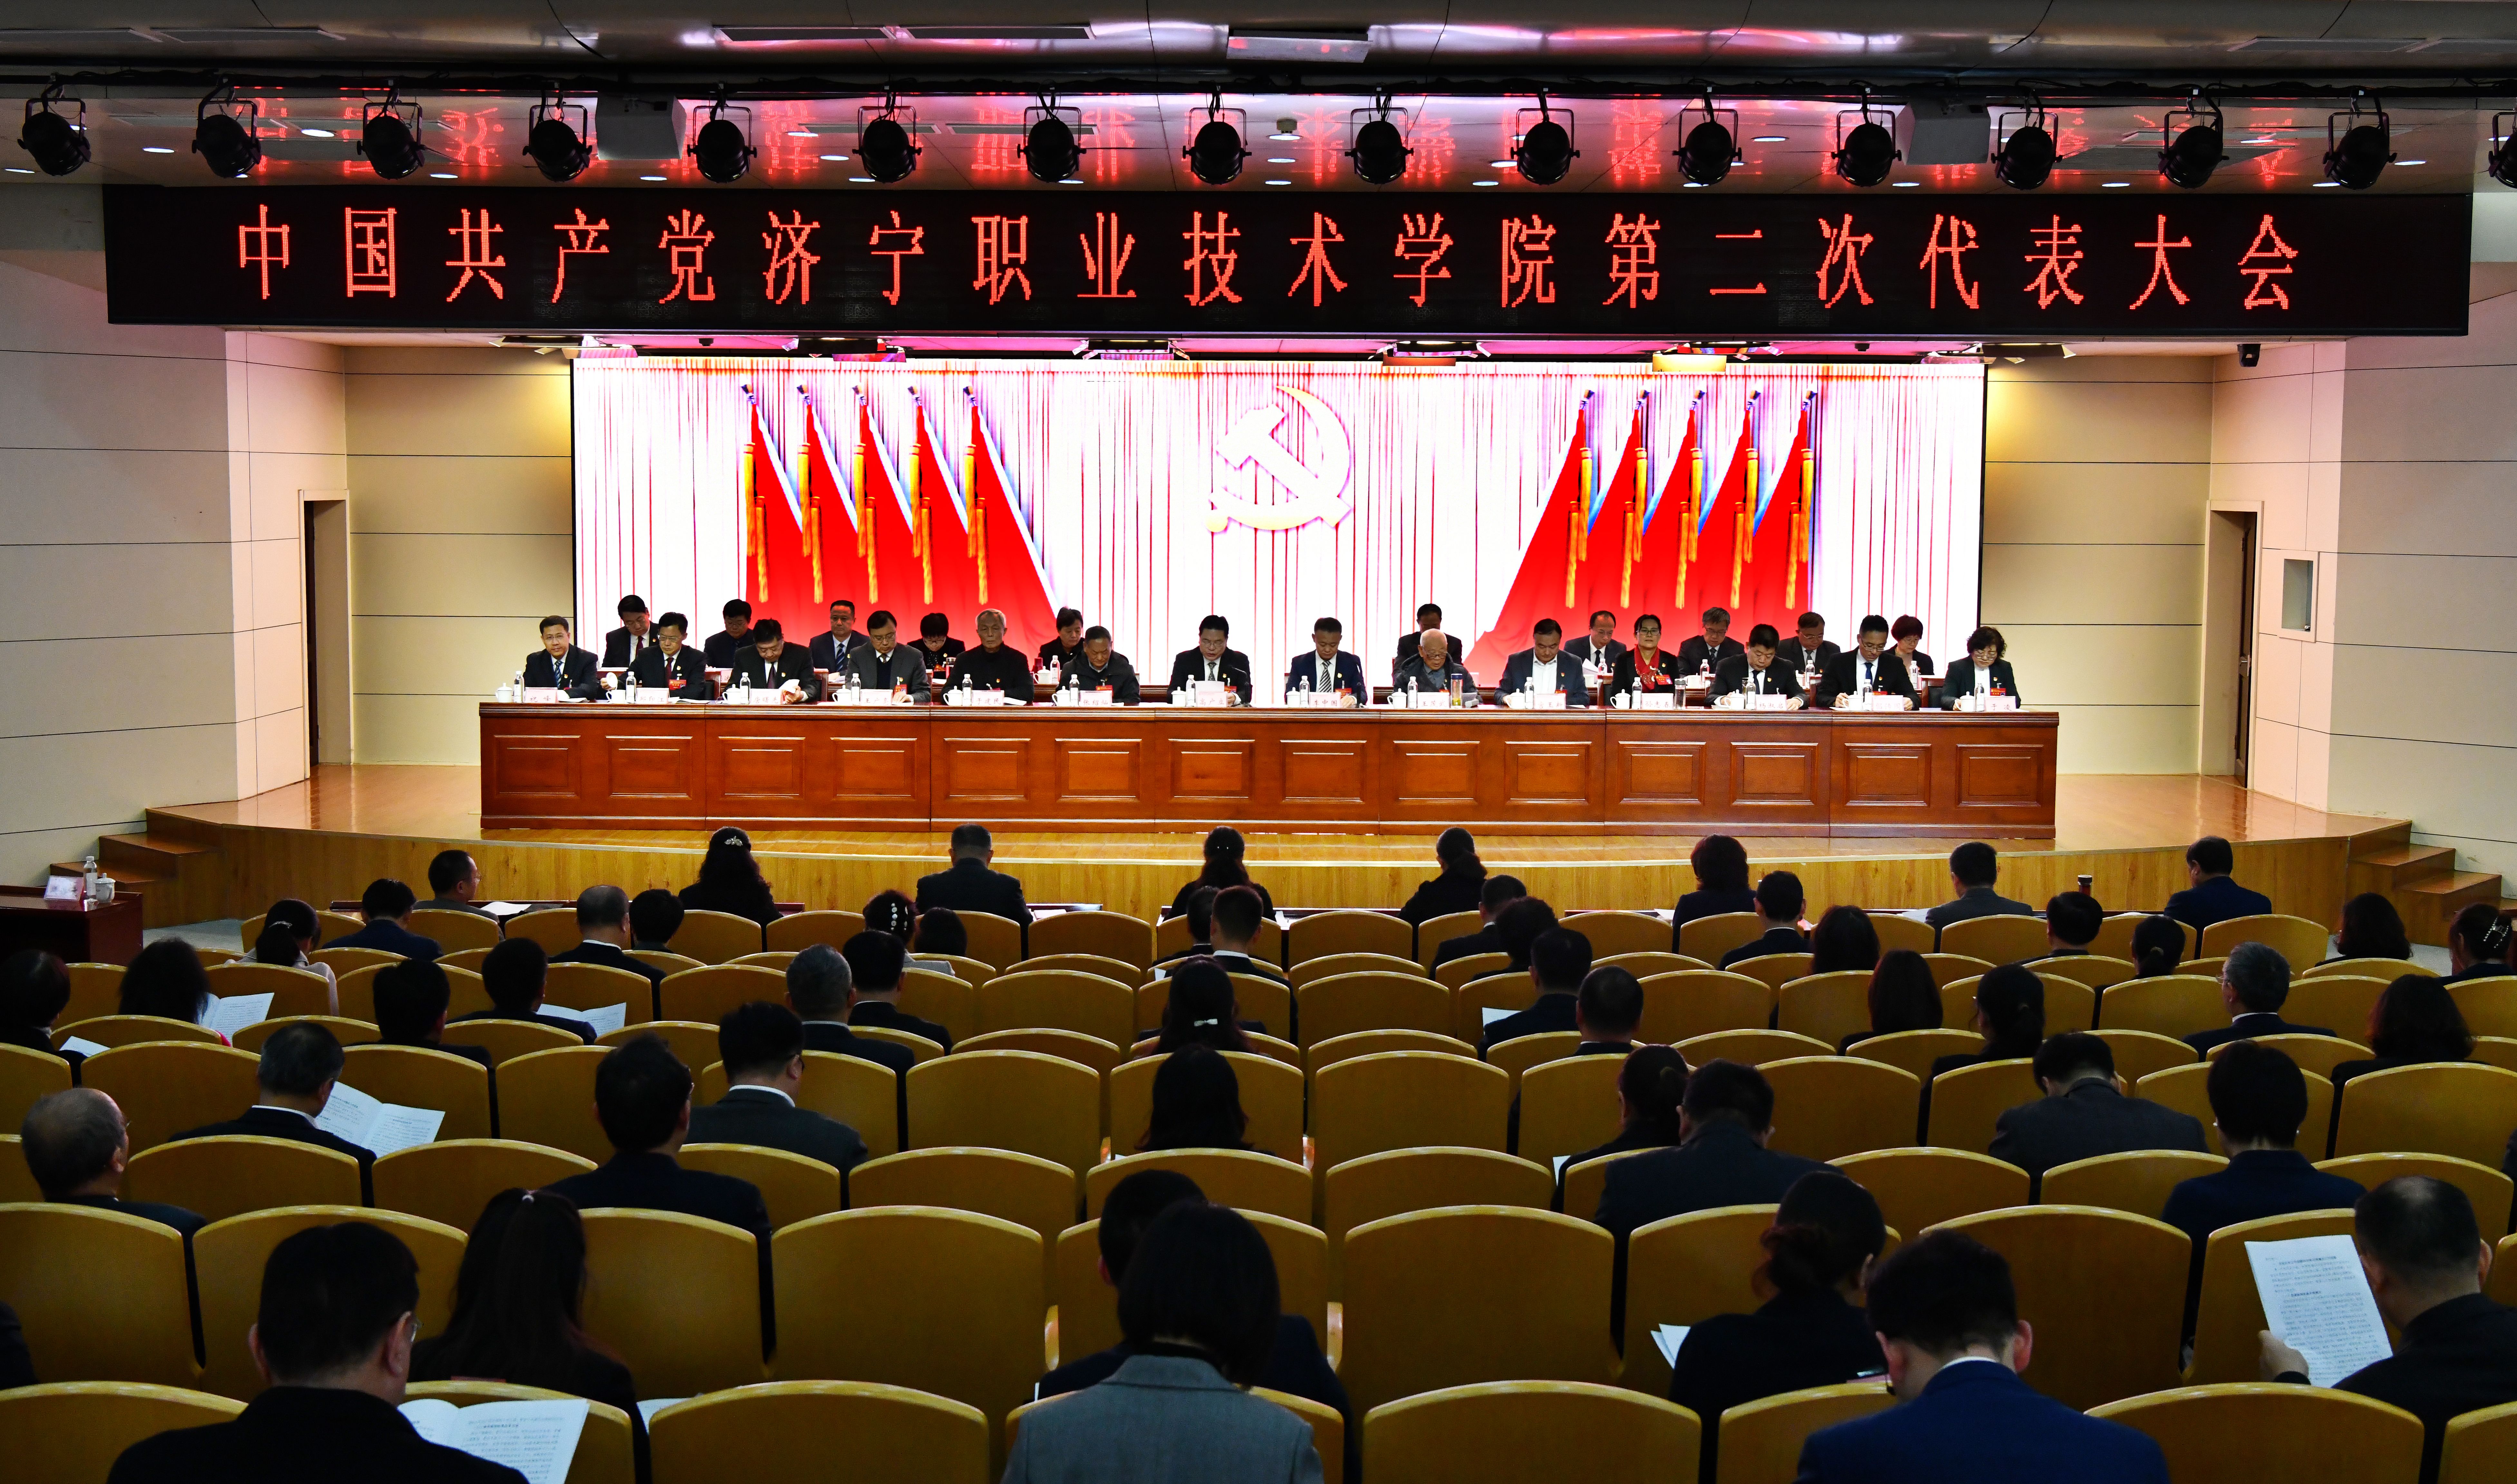 中国共产党49图库图纸更新最快第二次代表大会隆重召开